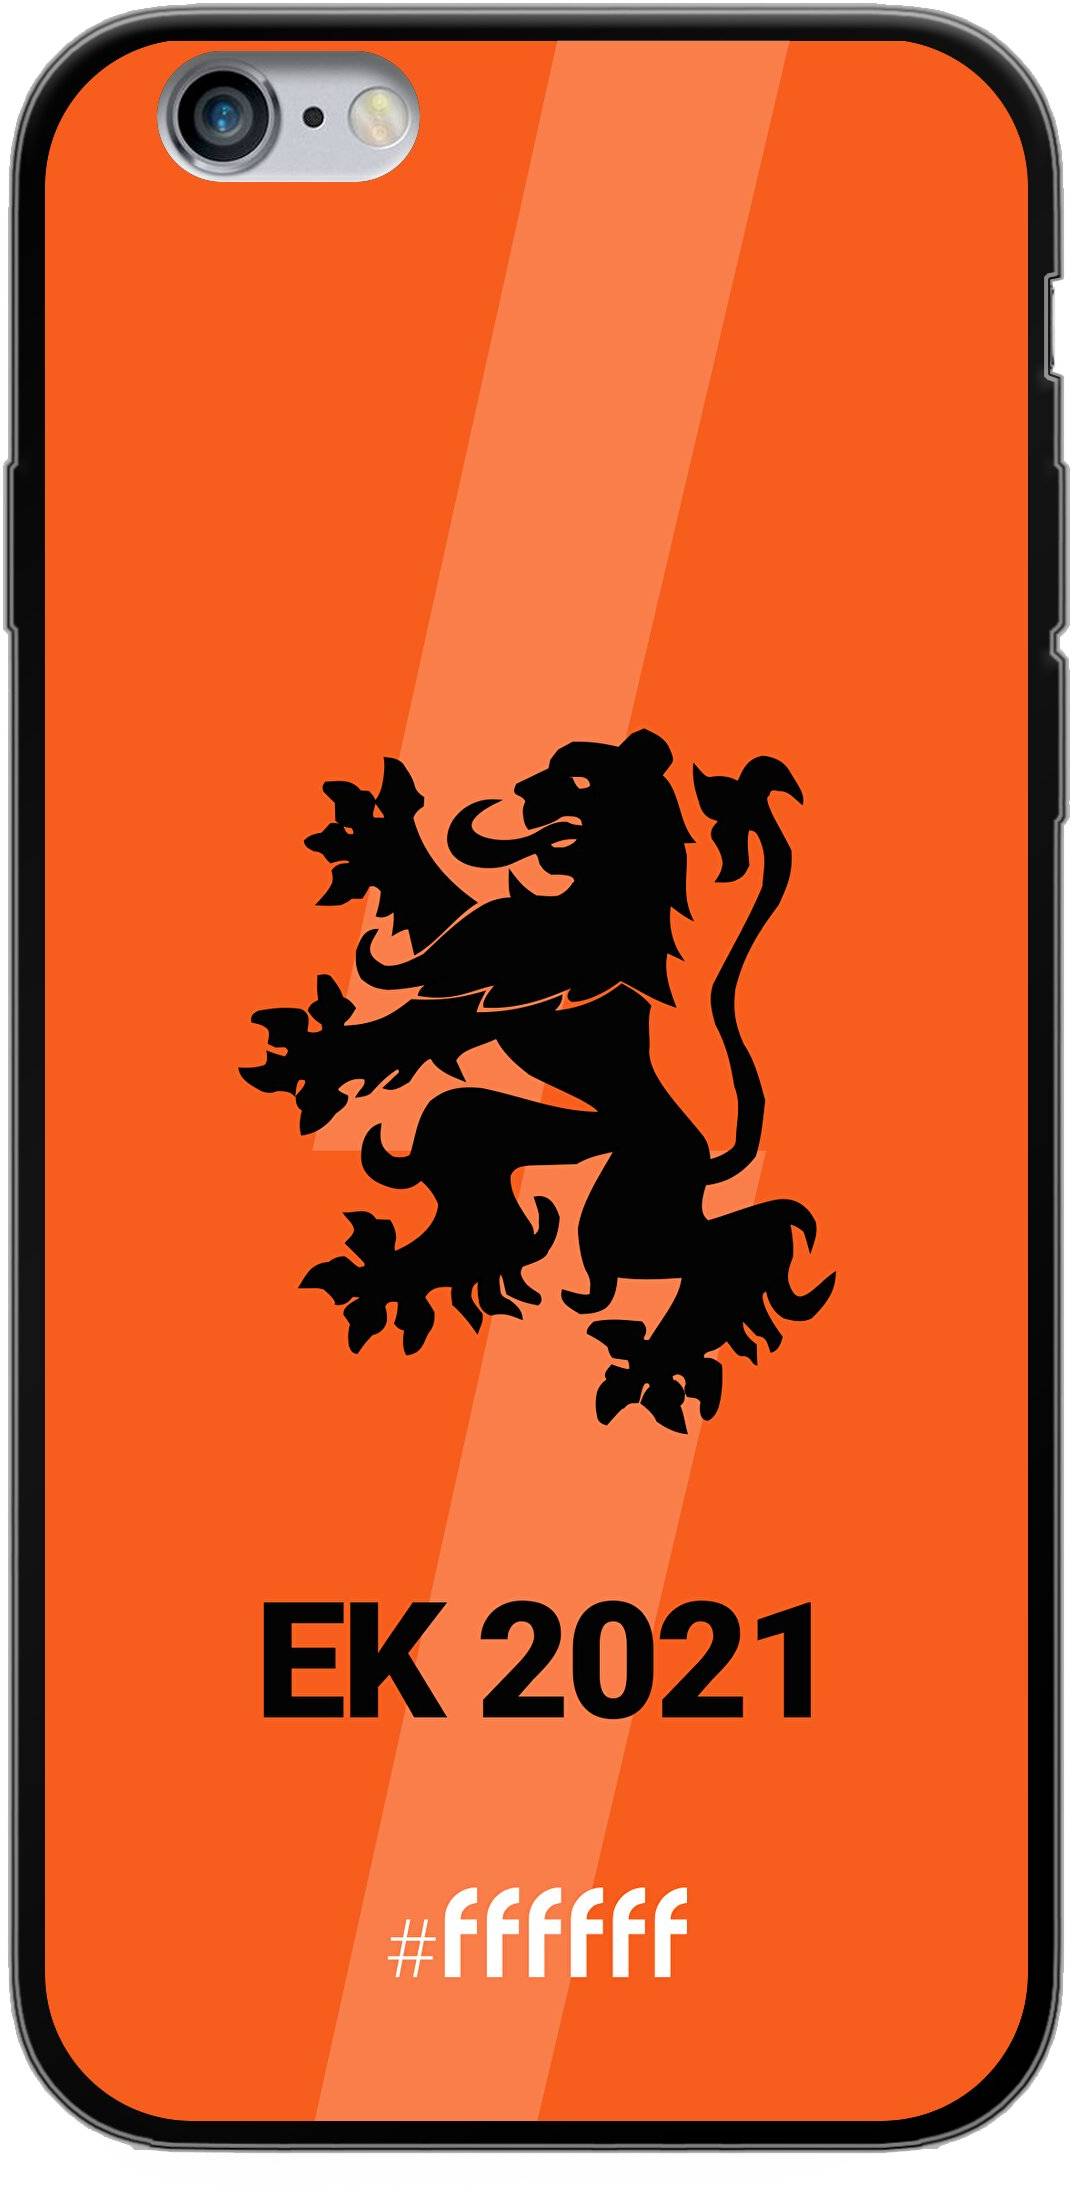 Nederlands Elftal - EK 2021 iPhone 6